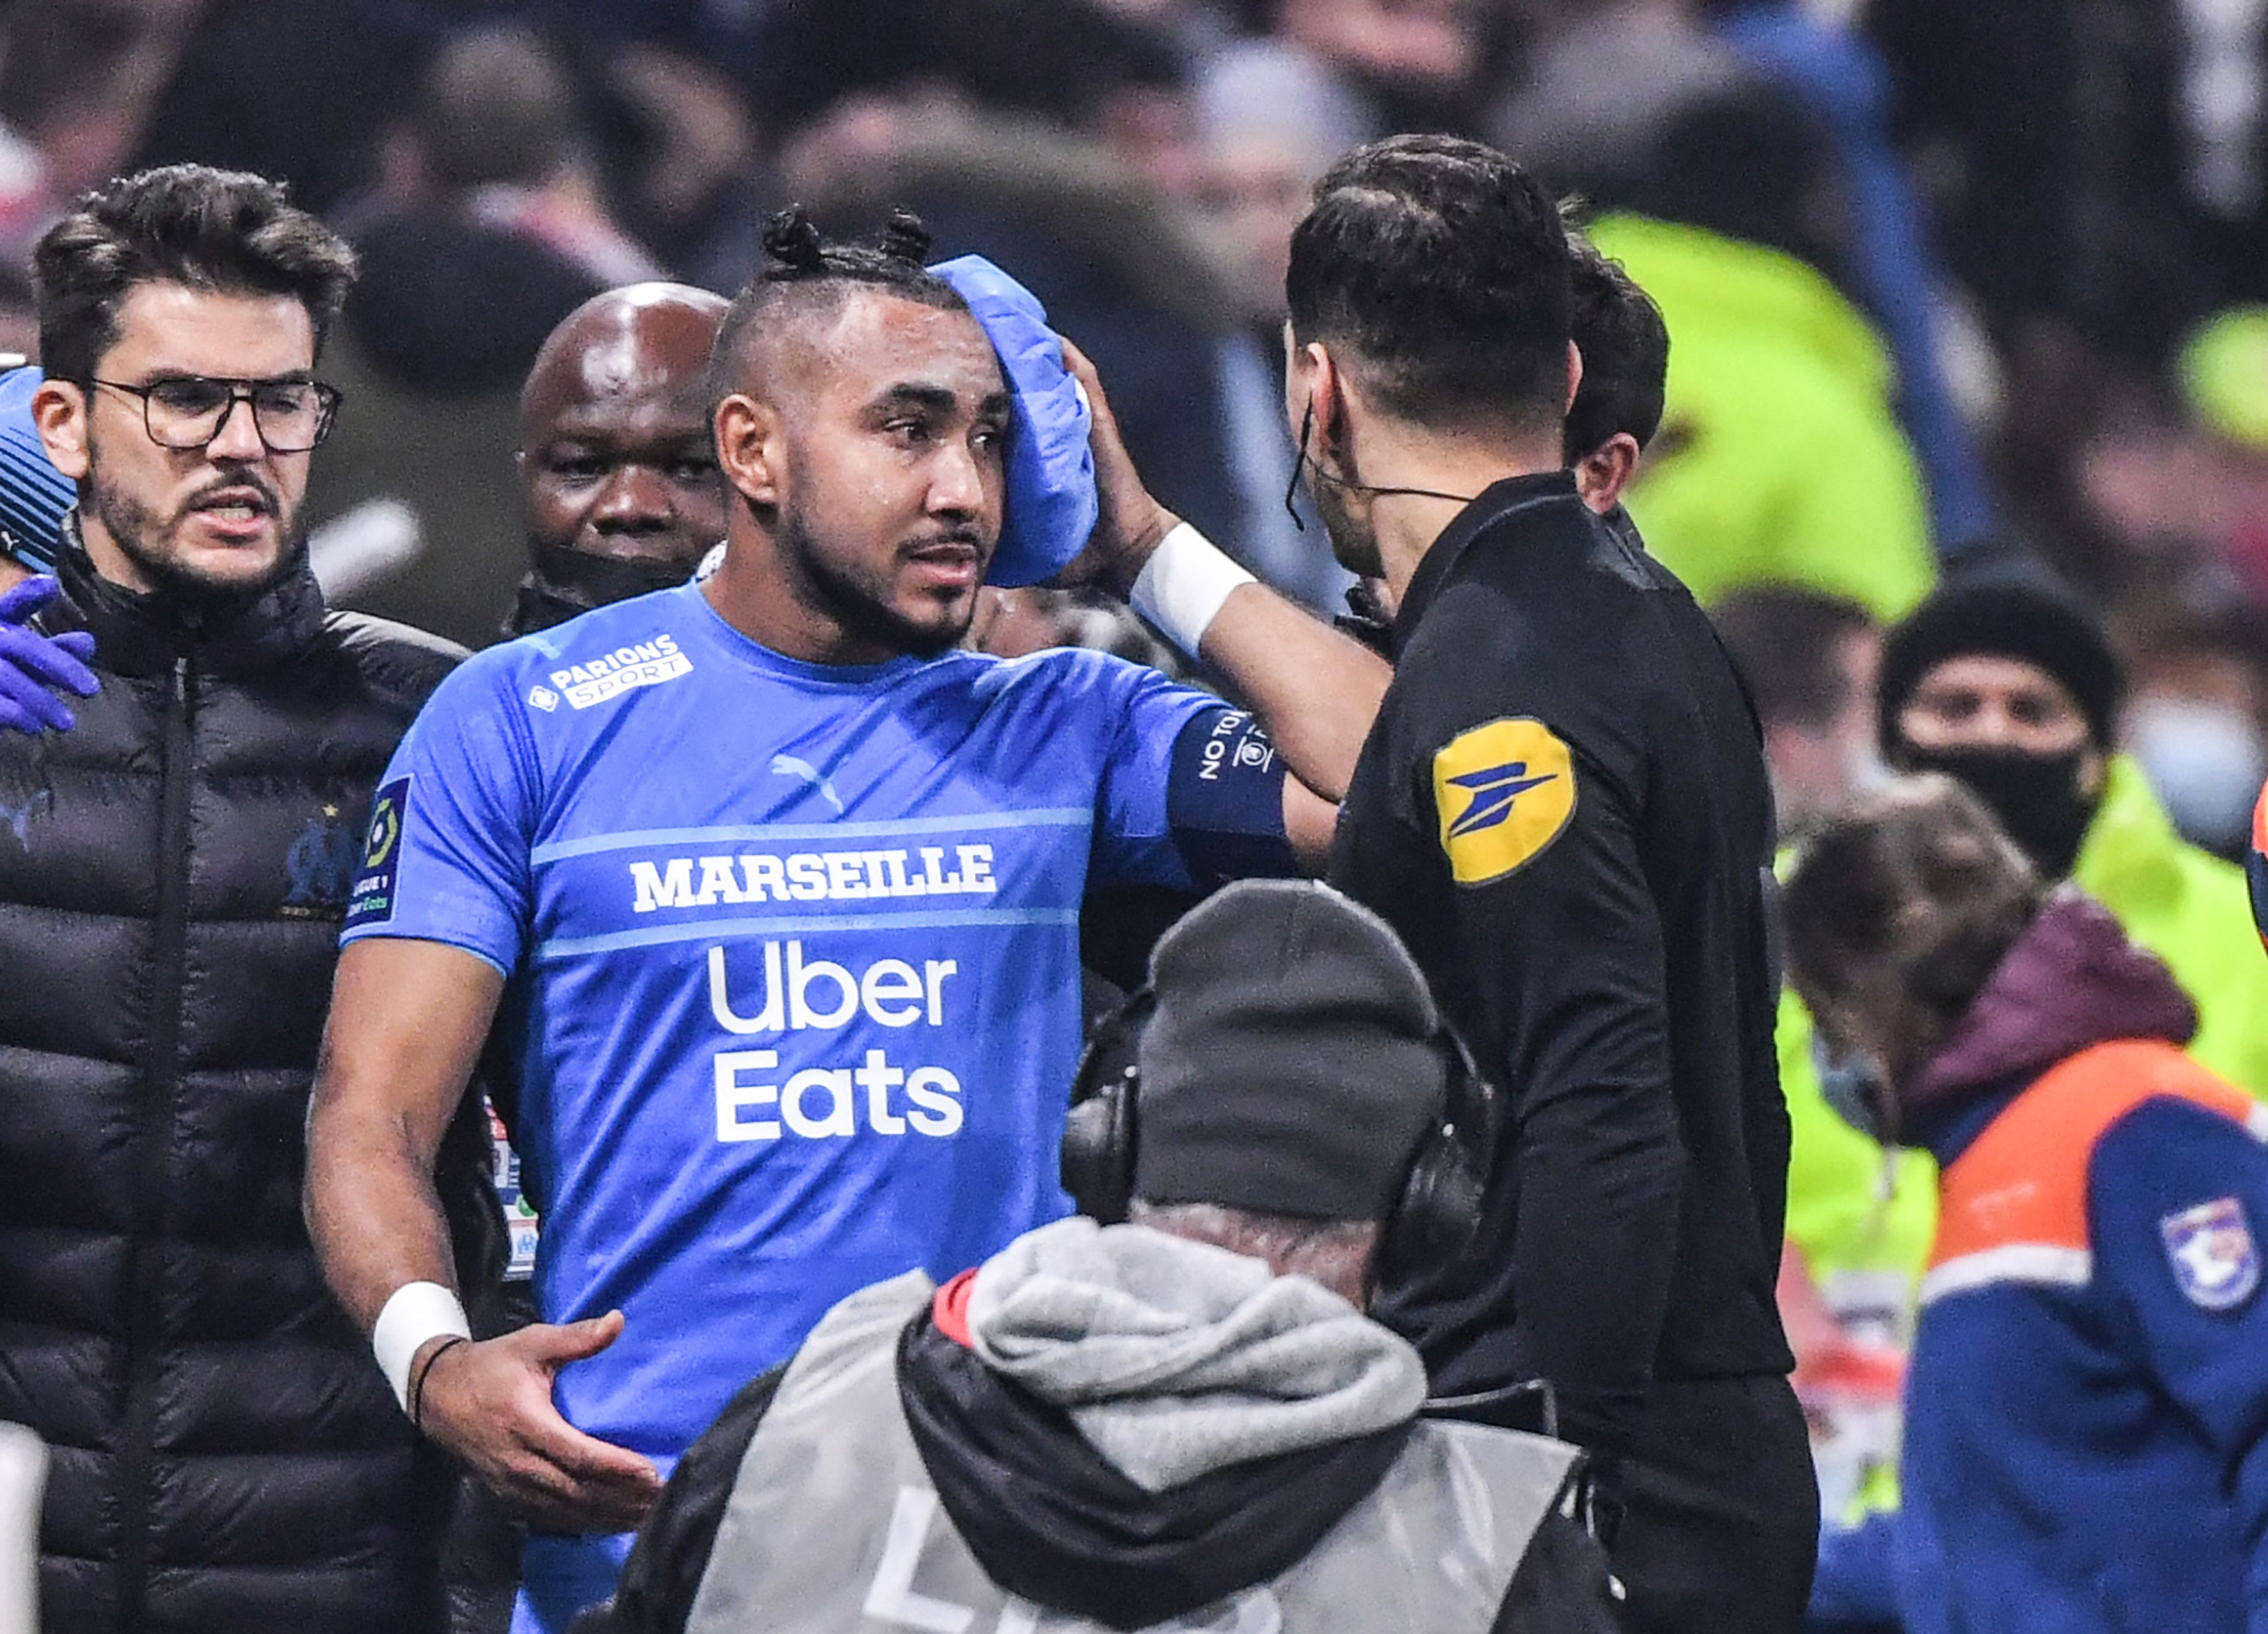 El jugador del Marsella Dimitri Payet (c) abandona el campo después de recibir botellazo en la cabeza en el Groupama. (Foto Prensa Libre: AFP)